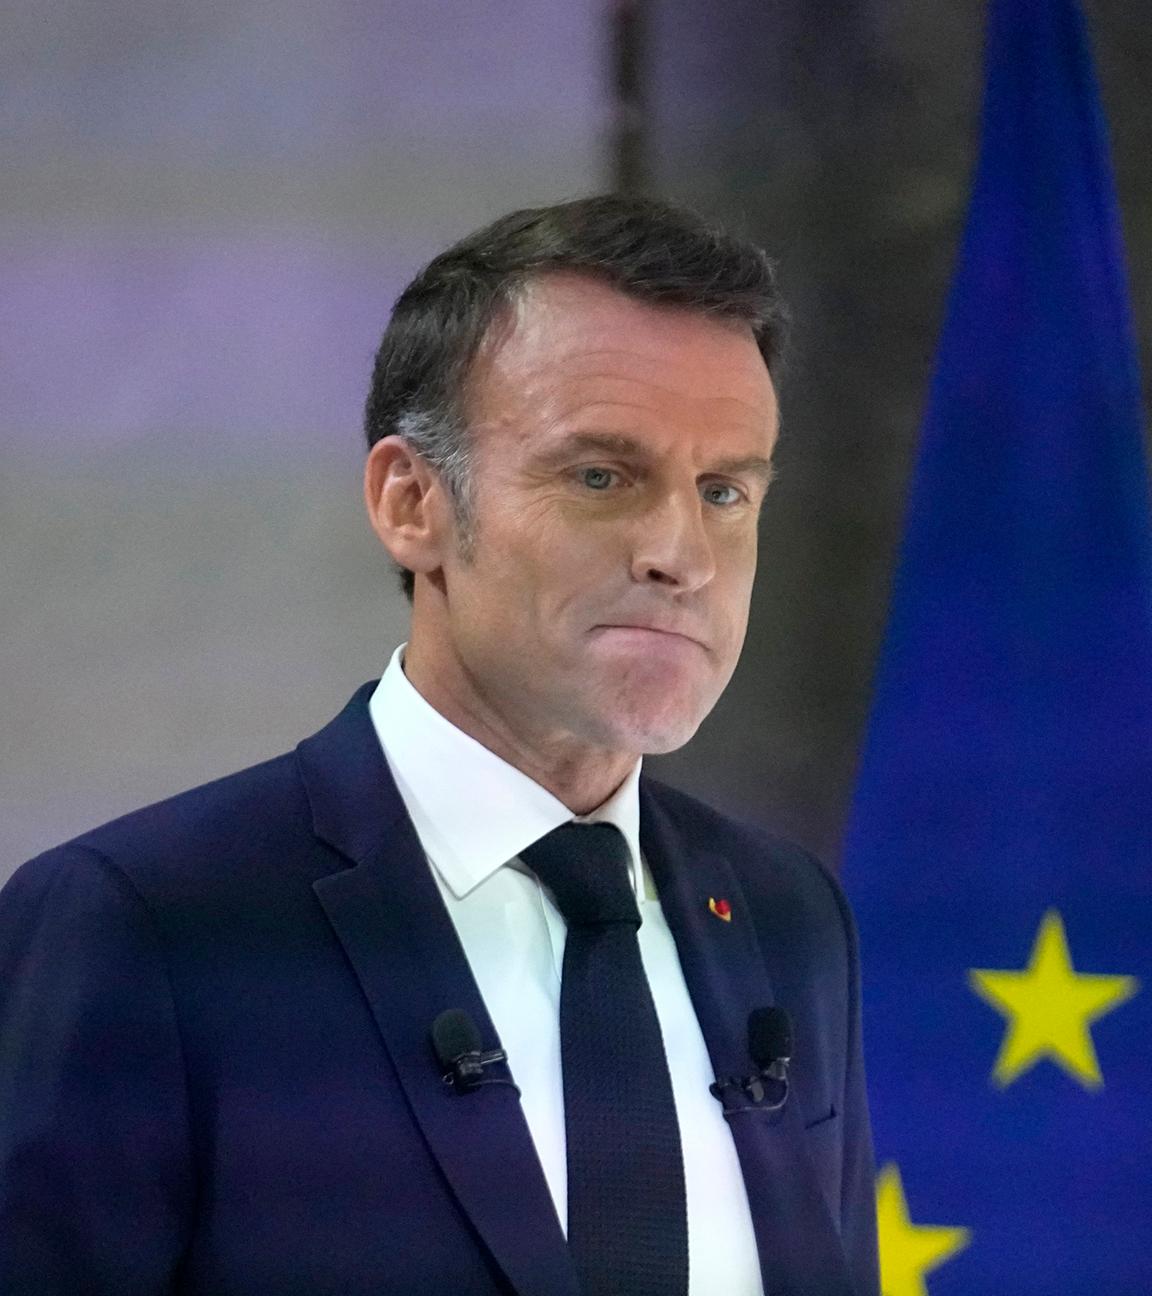 Der französische Präsident Emmanuel Macron verzieht das Gesicht bei einer Rede.